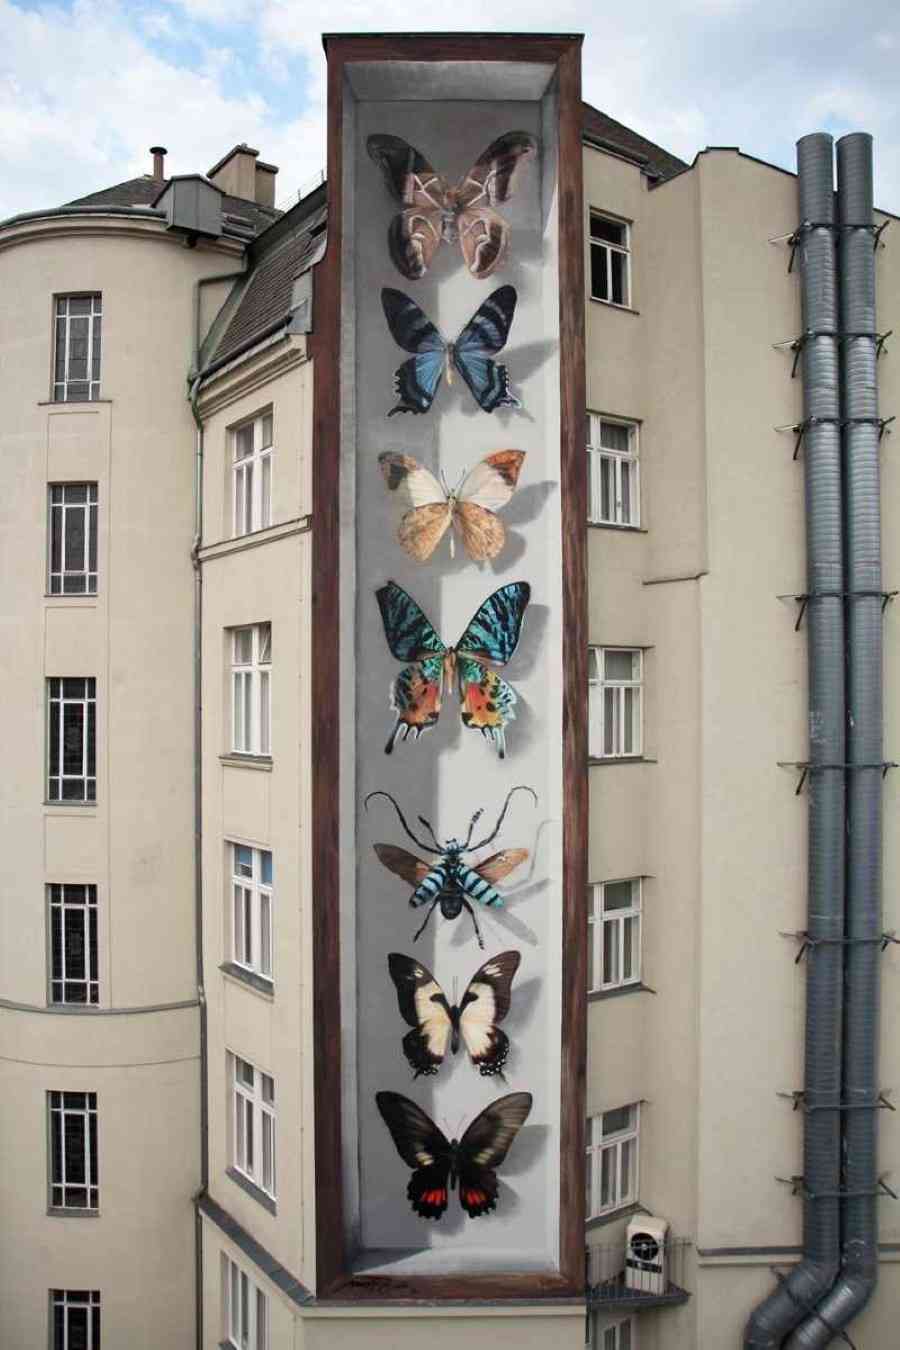 Wiener Schmetterlinge, 2017. Wien, Austria